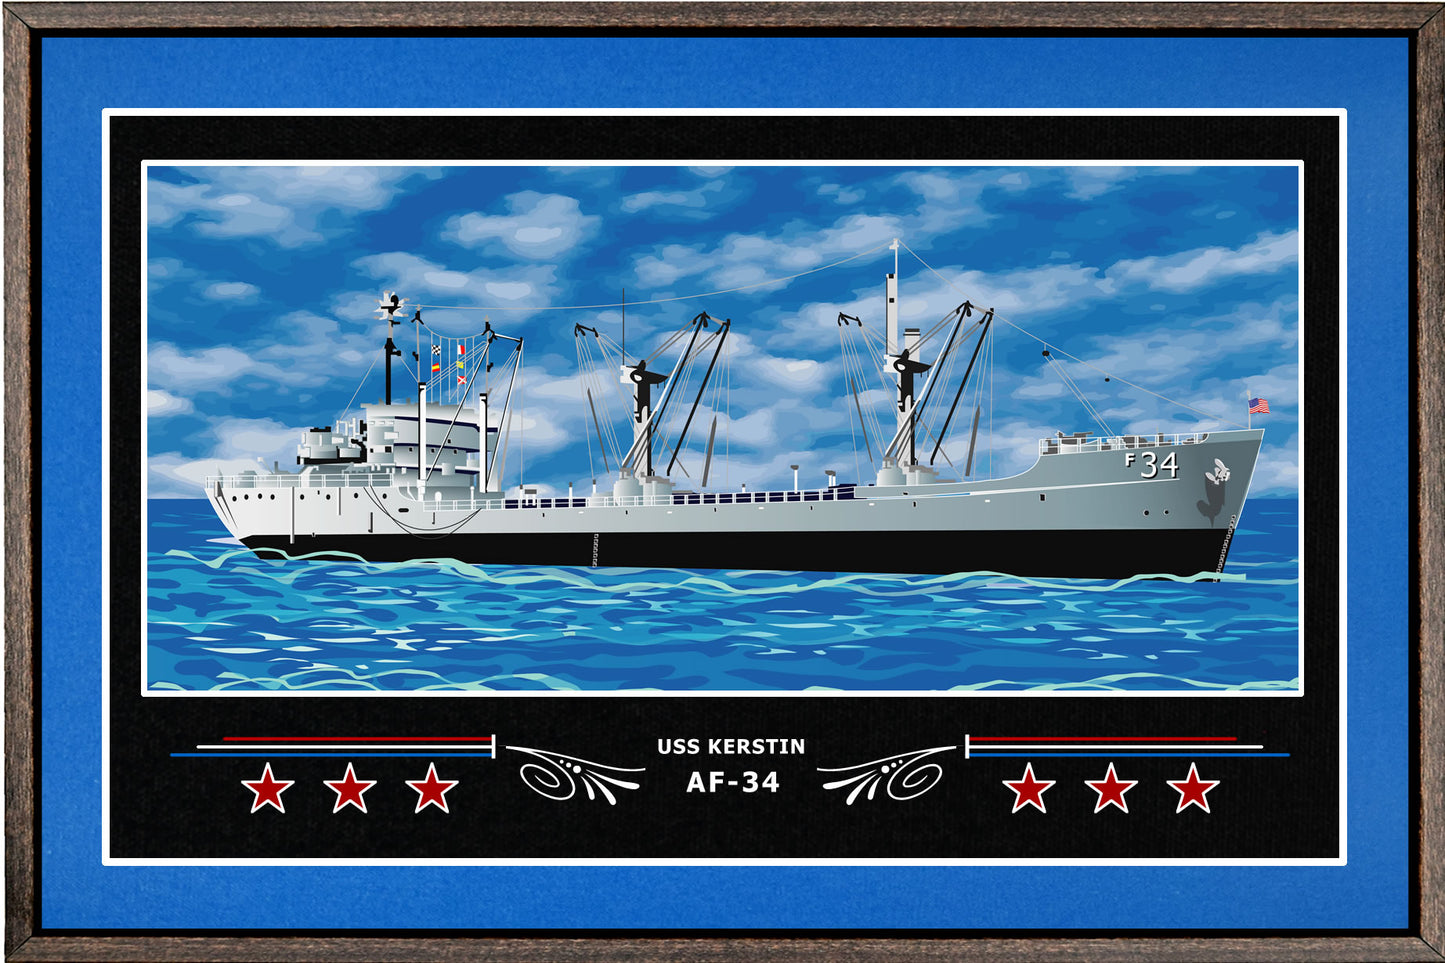 USS KERSTIN AF 34 BOX FRAMED CANVAS ART BLUE